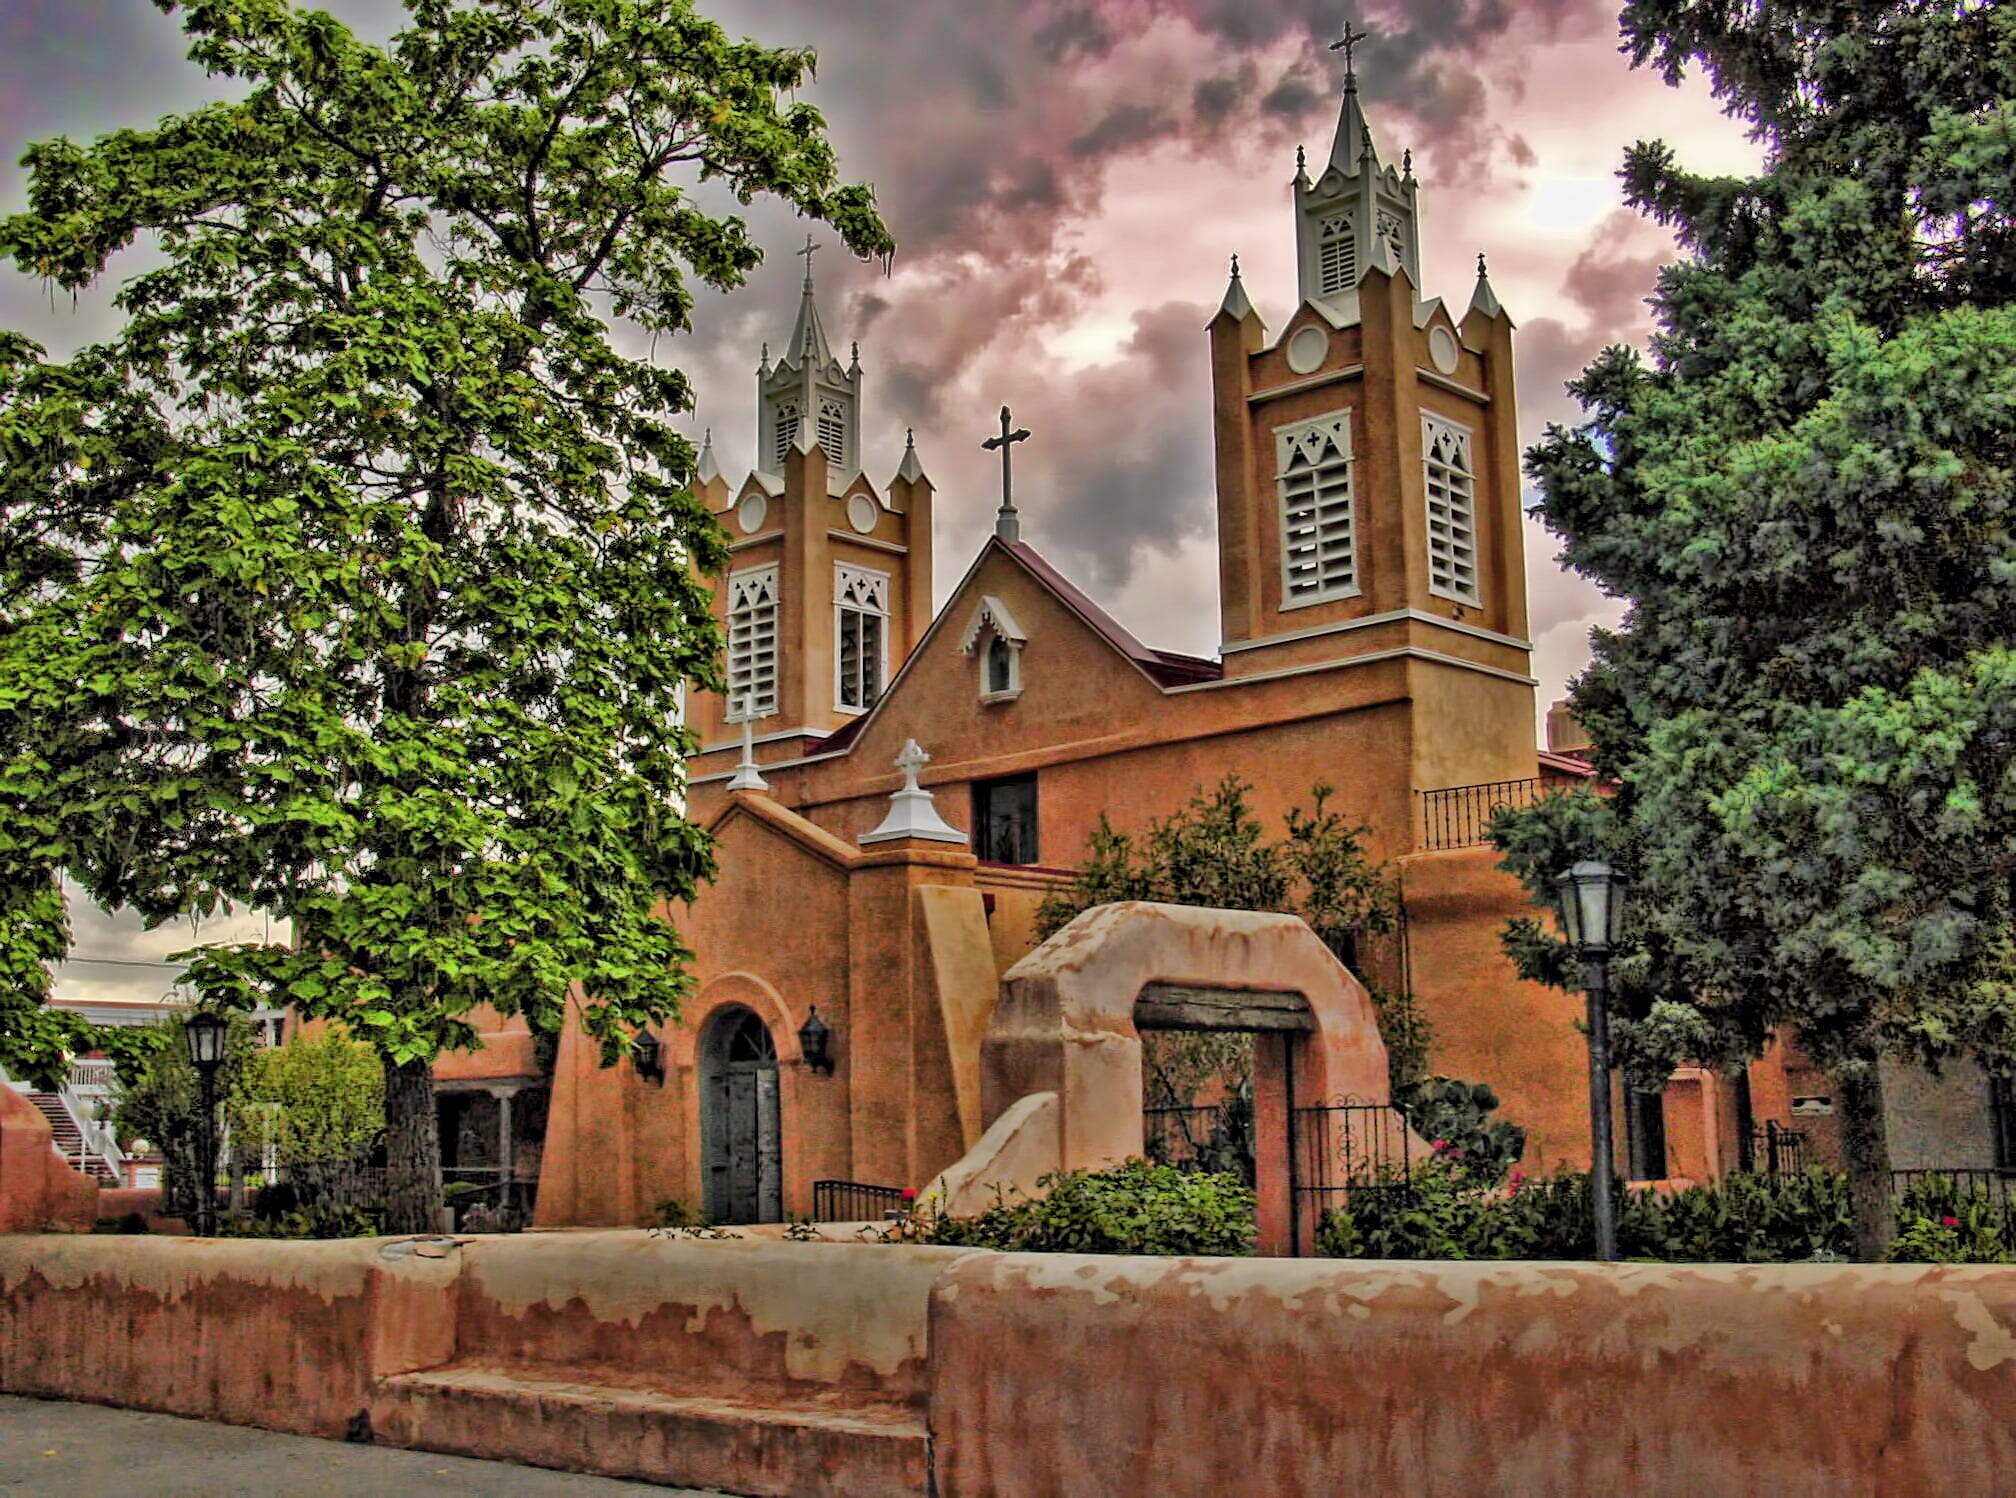 Albuquerque - San Felipe de Neri Church - Old Town Albuquerque